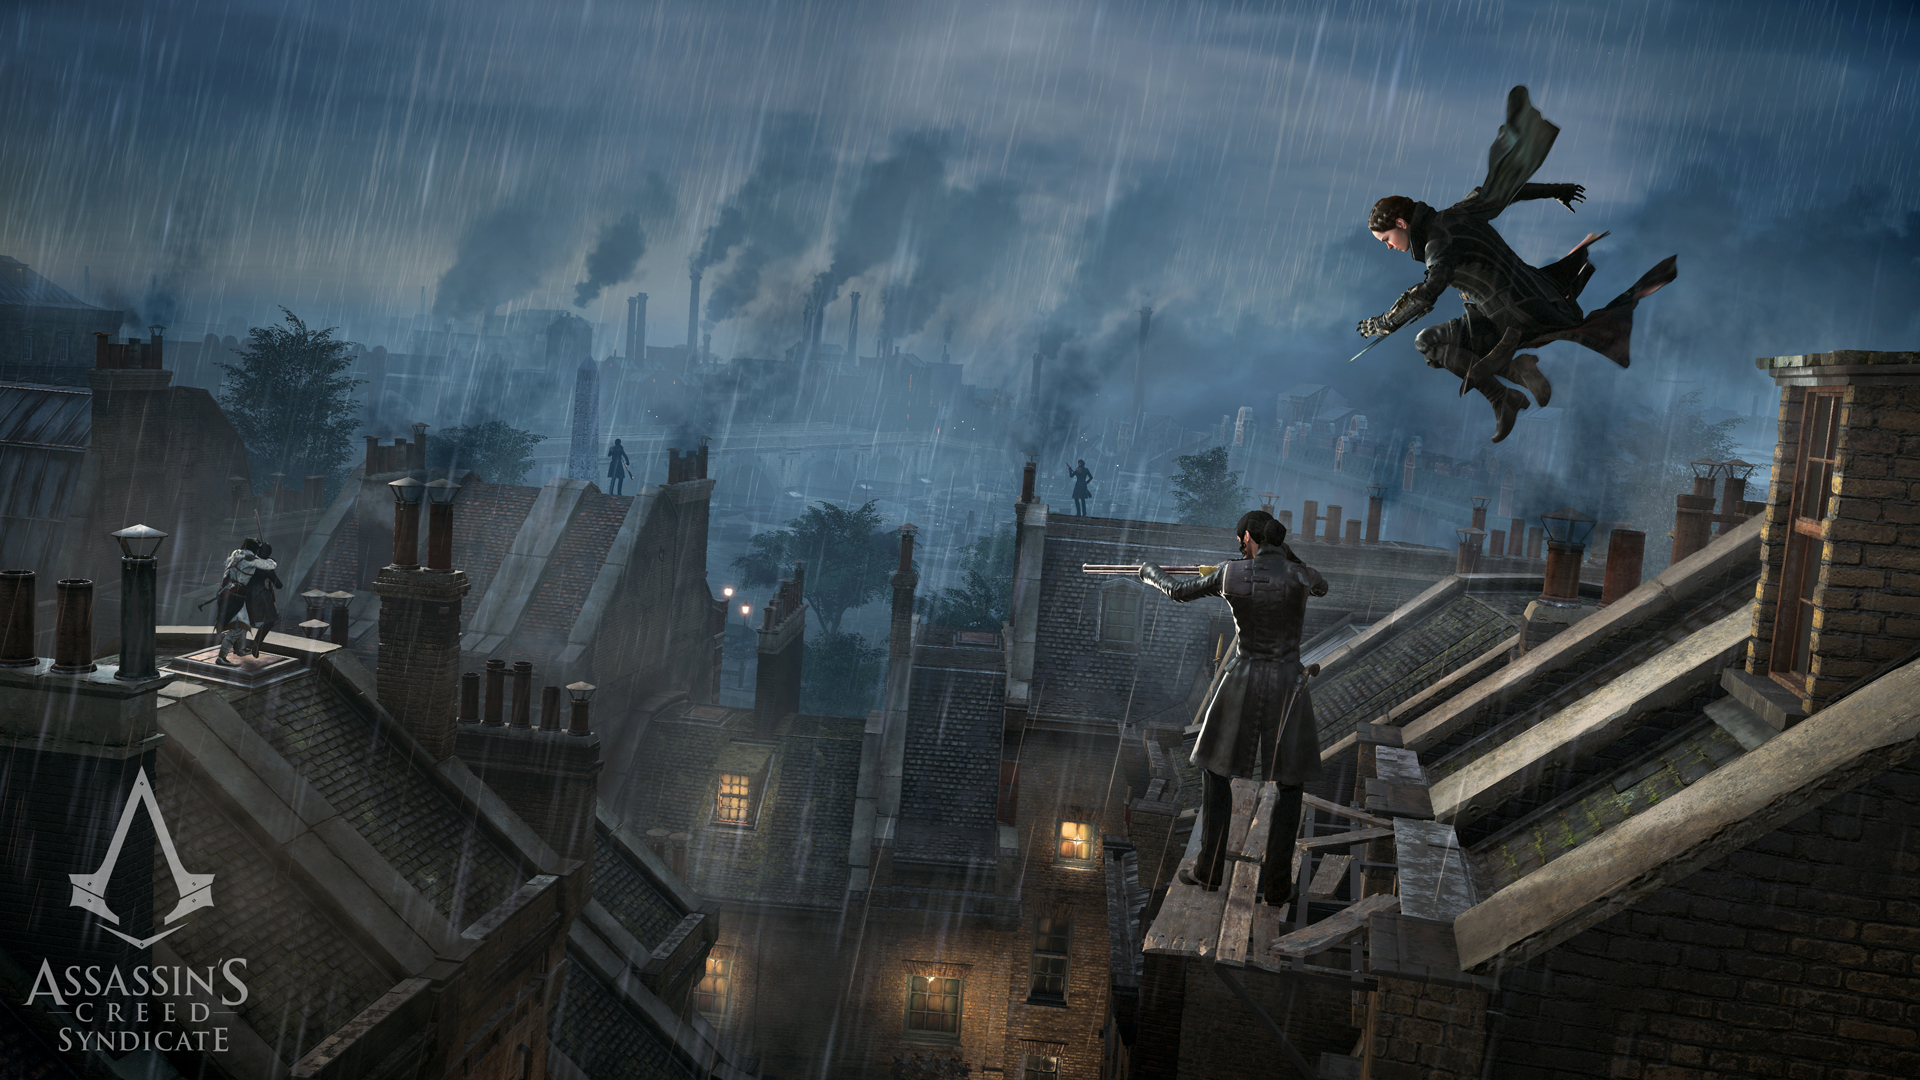 Immagine pubblicata in relazione al seguente contenuto: Ubisoft pubblica un nuovo trailer e screenshot di Assassin's Creed Syndicate | Nome immagine: news23123_Assassin-s-Creed-Syndicate_7.jpg